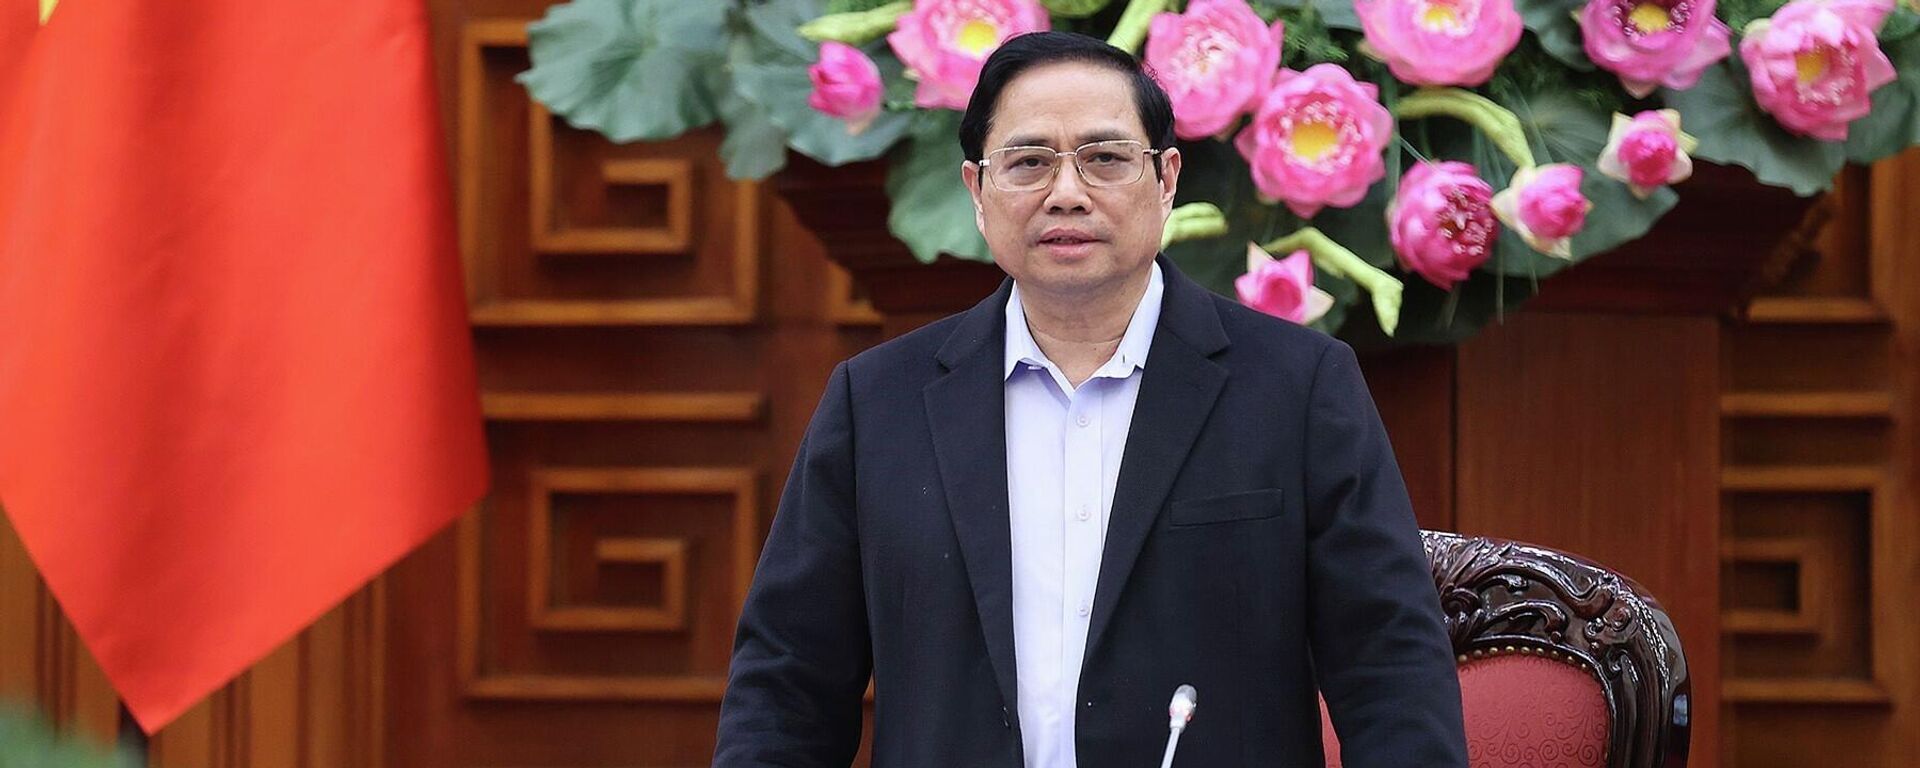 Thủ tướng Phạm Minh Chính họp trực tuyến với các tỉnh khu vực miền Trung và Tây Nguyên đang chịu ảnh hưởng của bão lũ - Sputnik Việt Nam, 1920, 05.12.2021